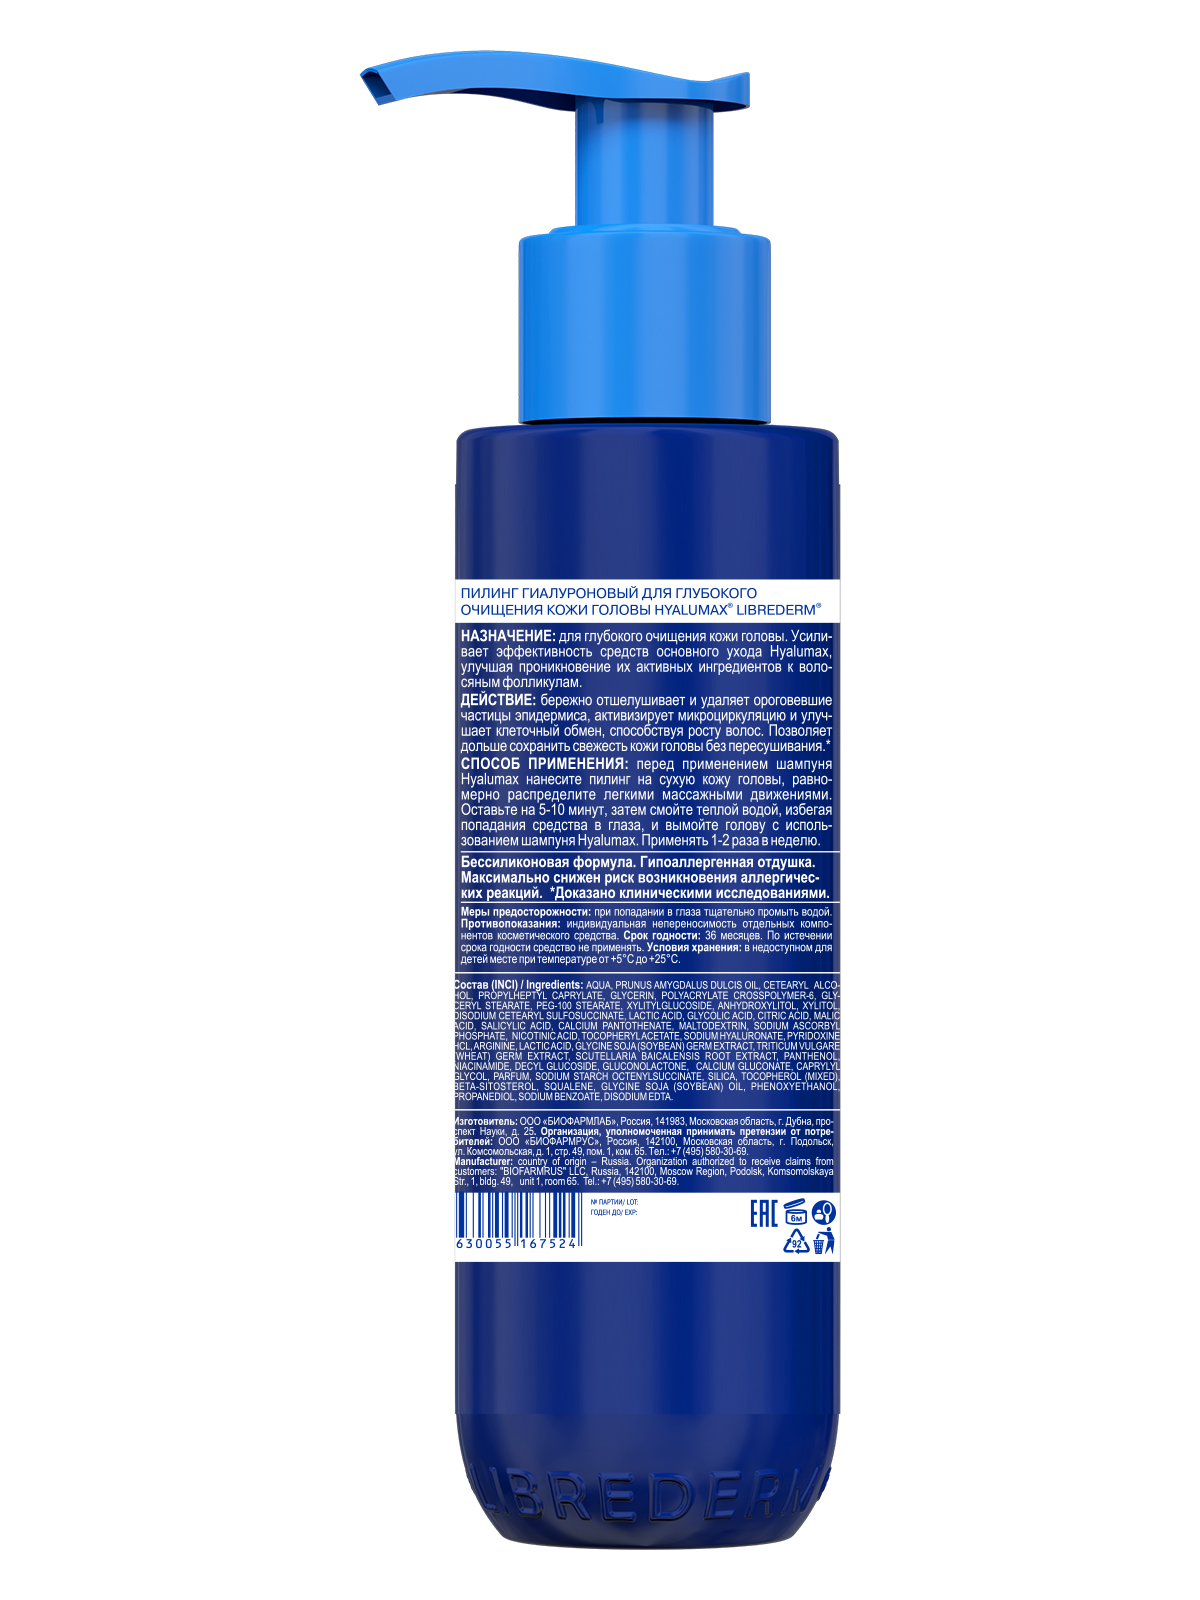 Пилинг Librederm HyaluMax гиалуроновый для глубокого очищения кожи головы 125 мл - фото 12